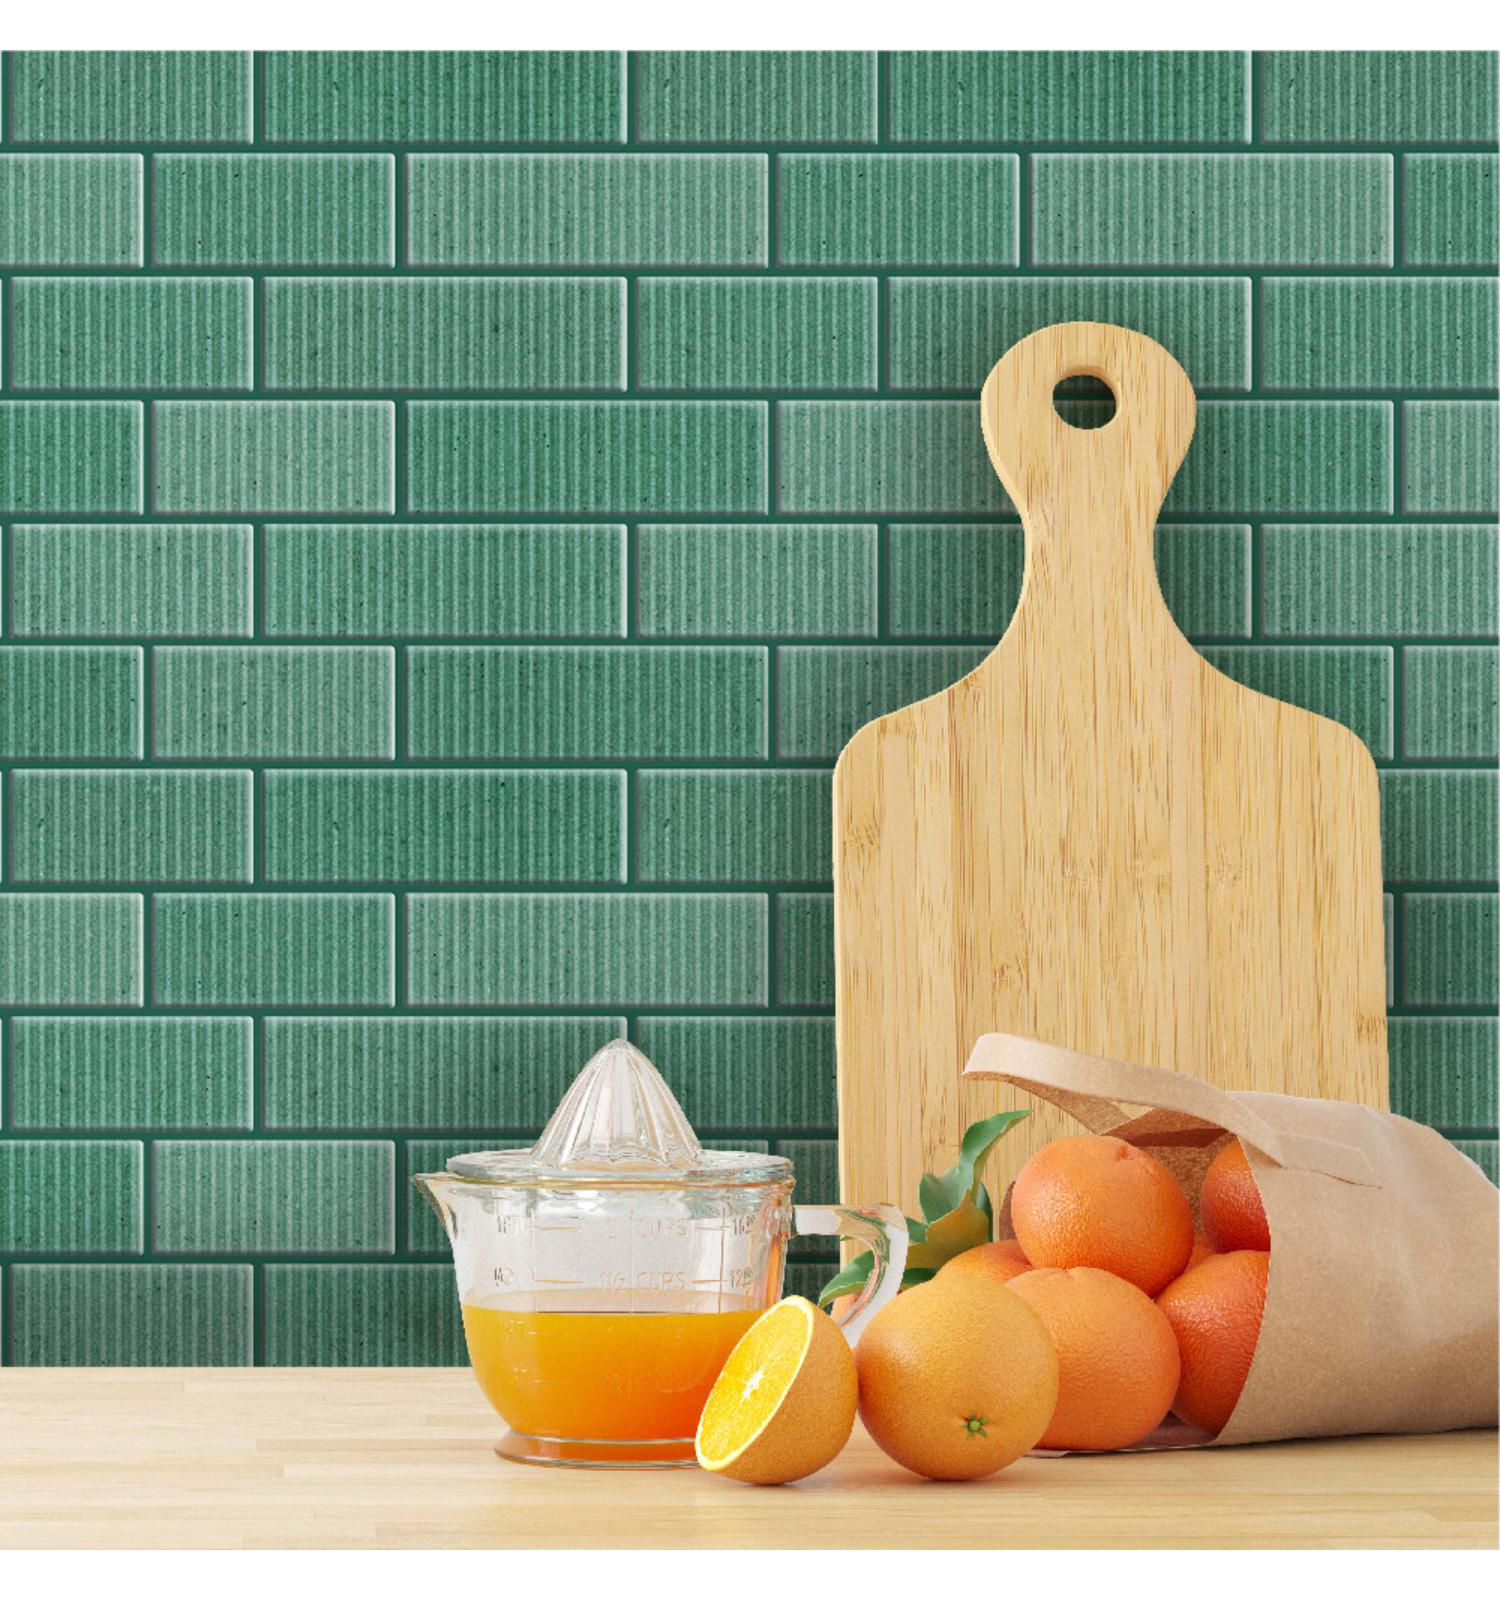 Fluted Peel and Stick Backsplash Self Adhesive 3D Wall Tiles for Home Décor | Kitchen Backsplash Tile